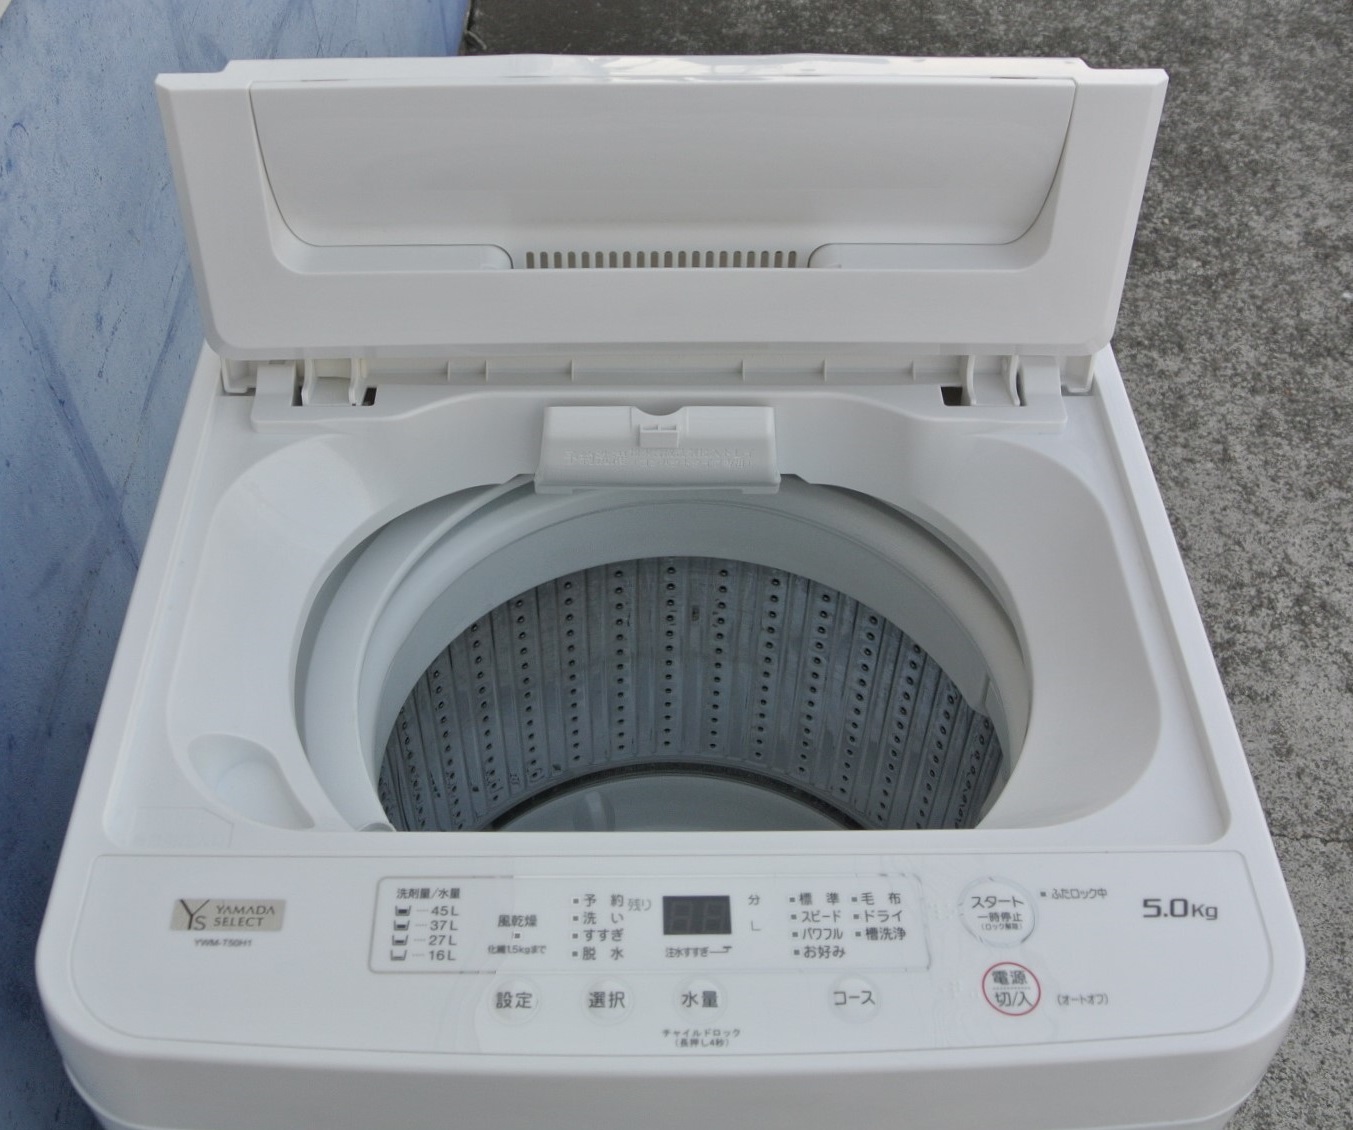 ハイアール 6kg ドーム型 全自動洗濯機 高濃度洗浄 風乾燥機能付き ...